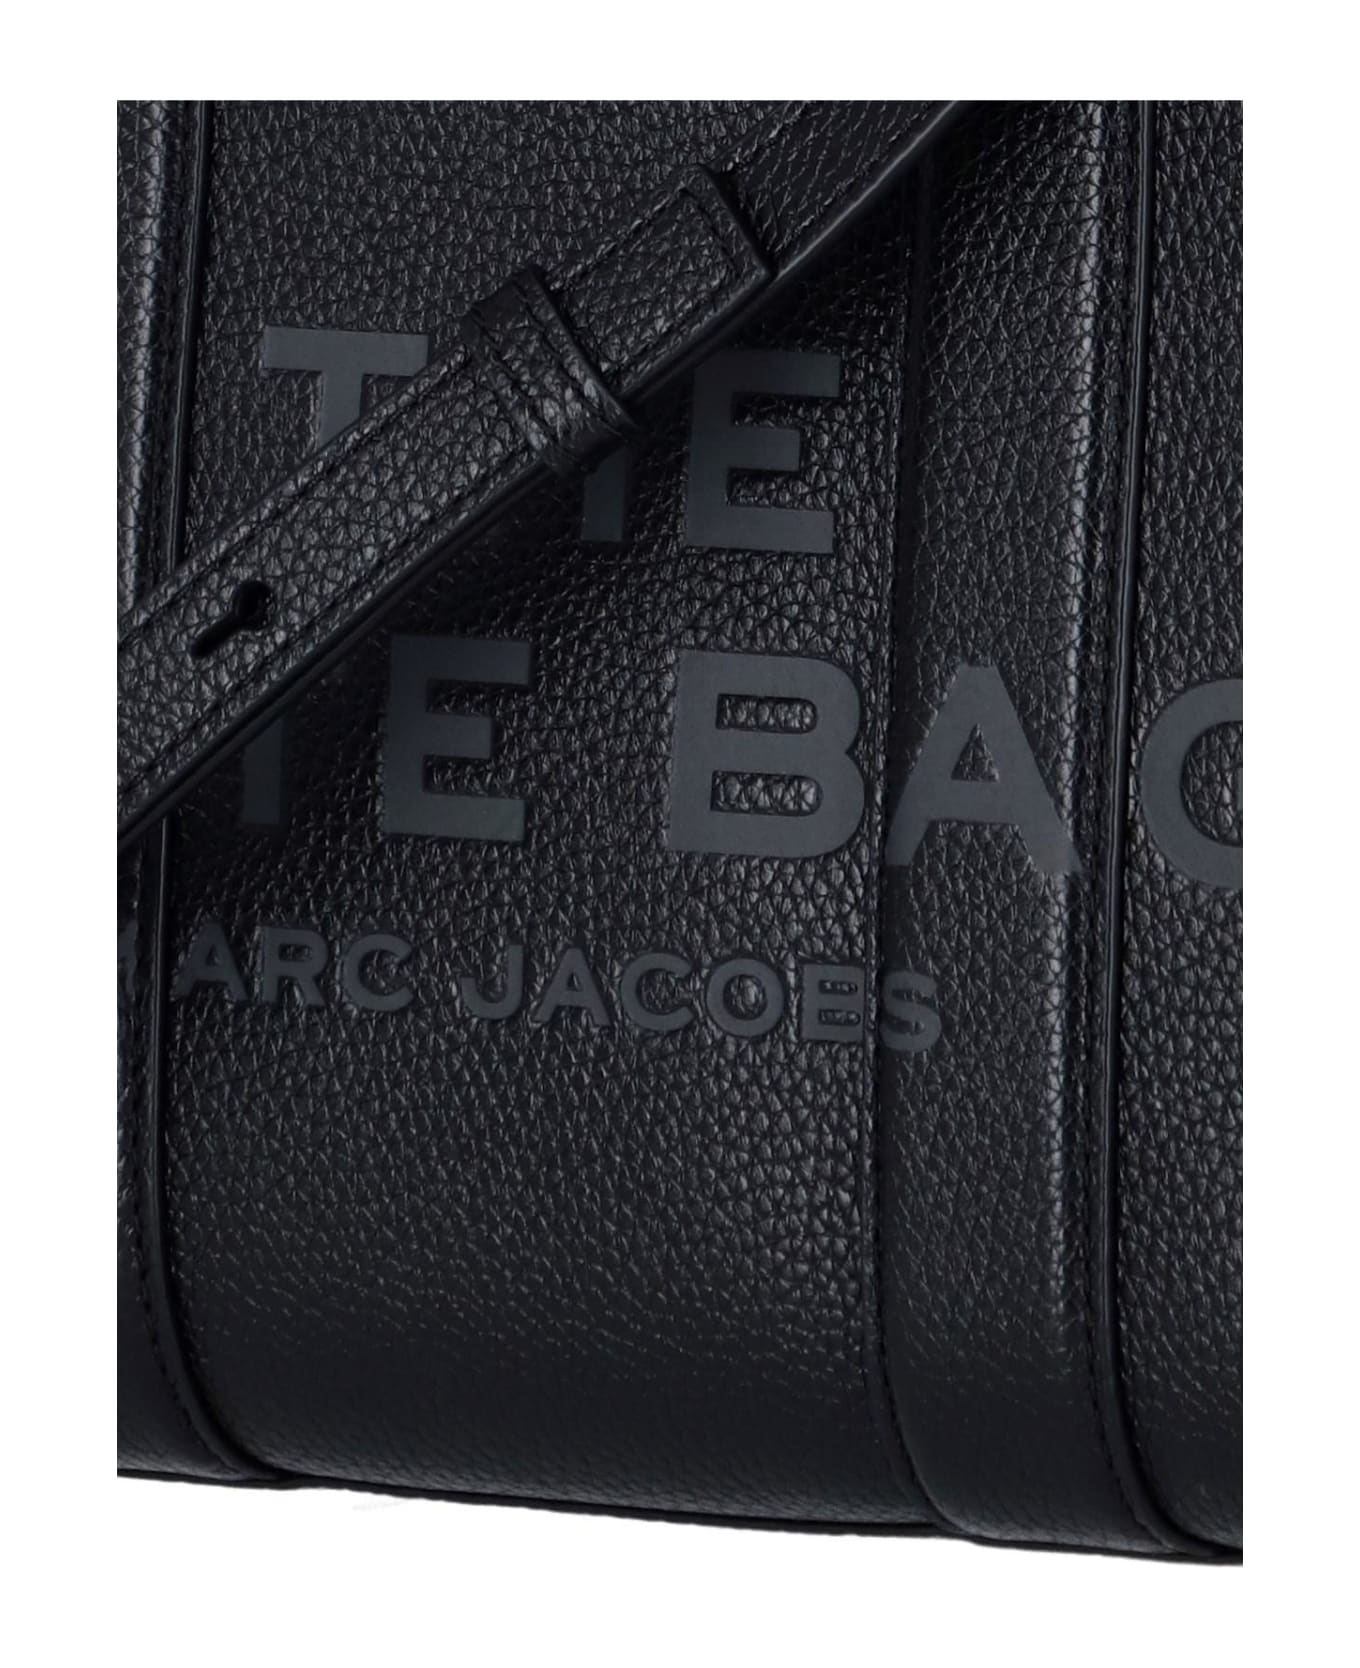 Marc Jacobs - Mini Logo Tote Bag - BLACK